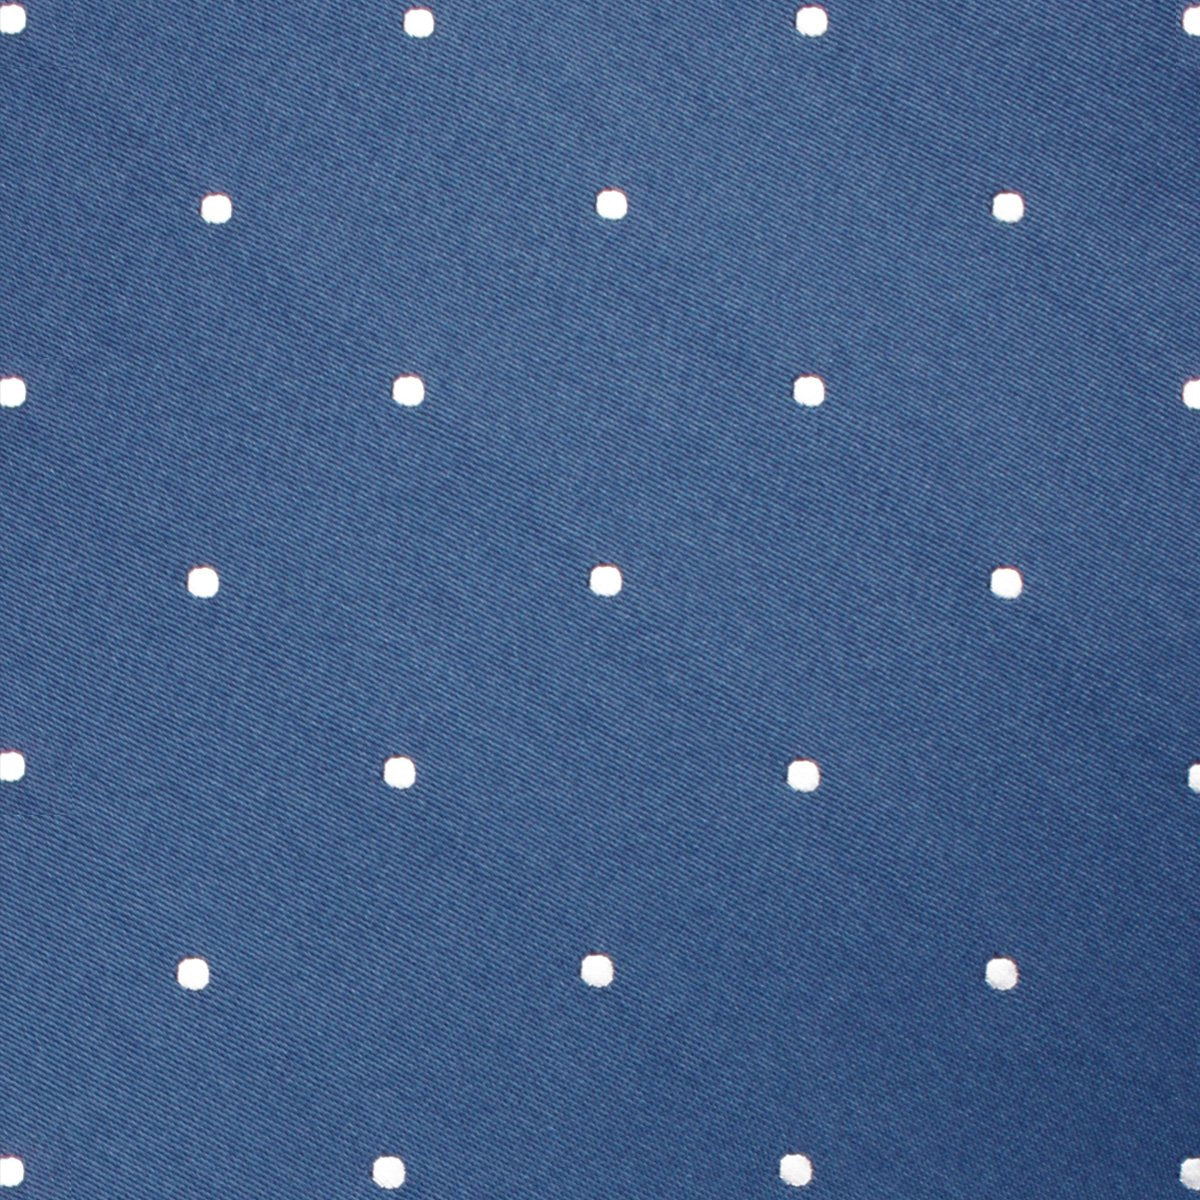 Prussian Polka Dots Skinny Tie Fabric